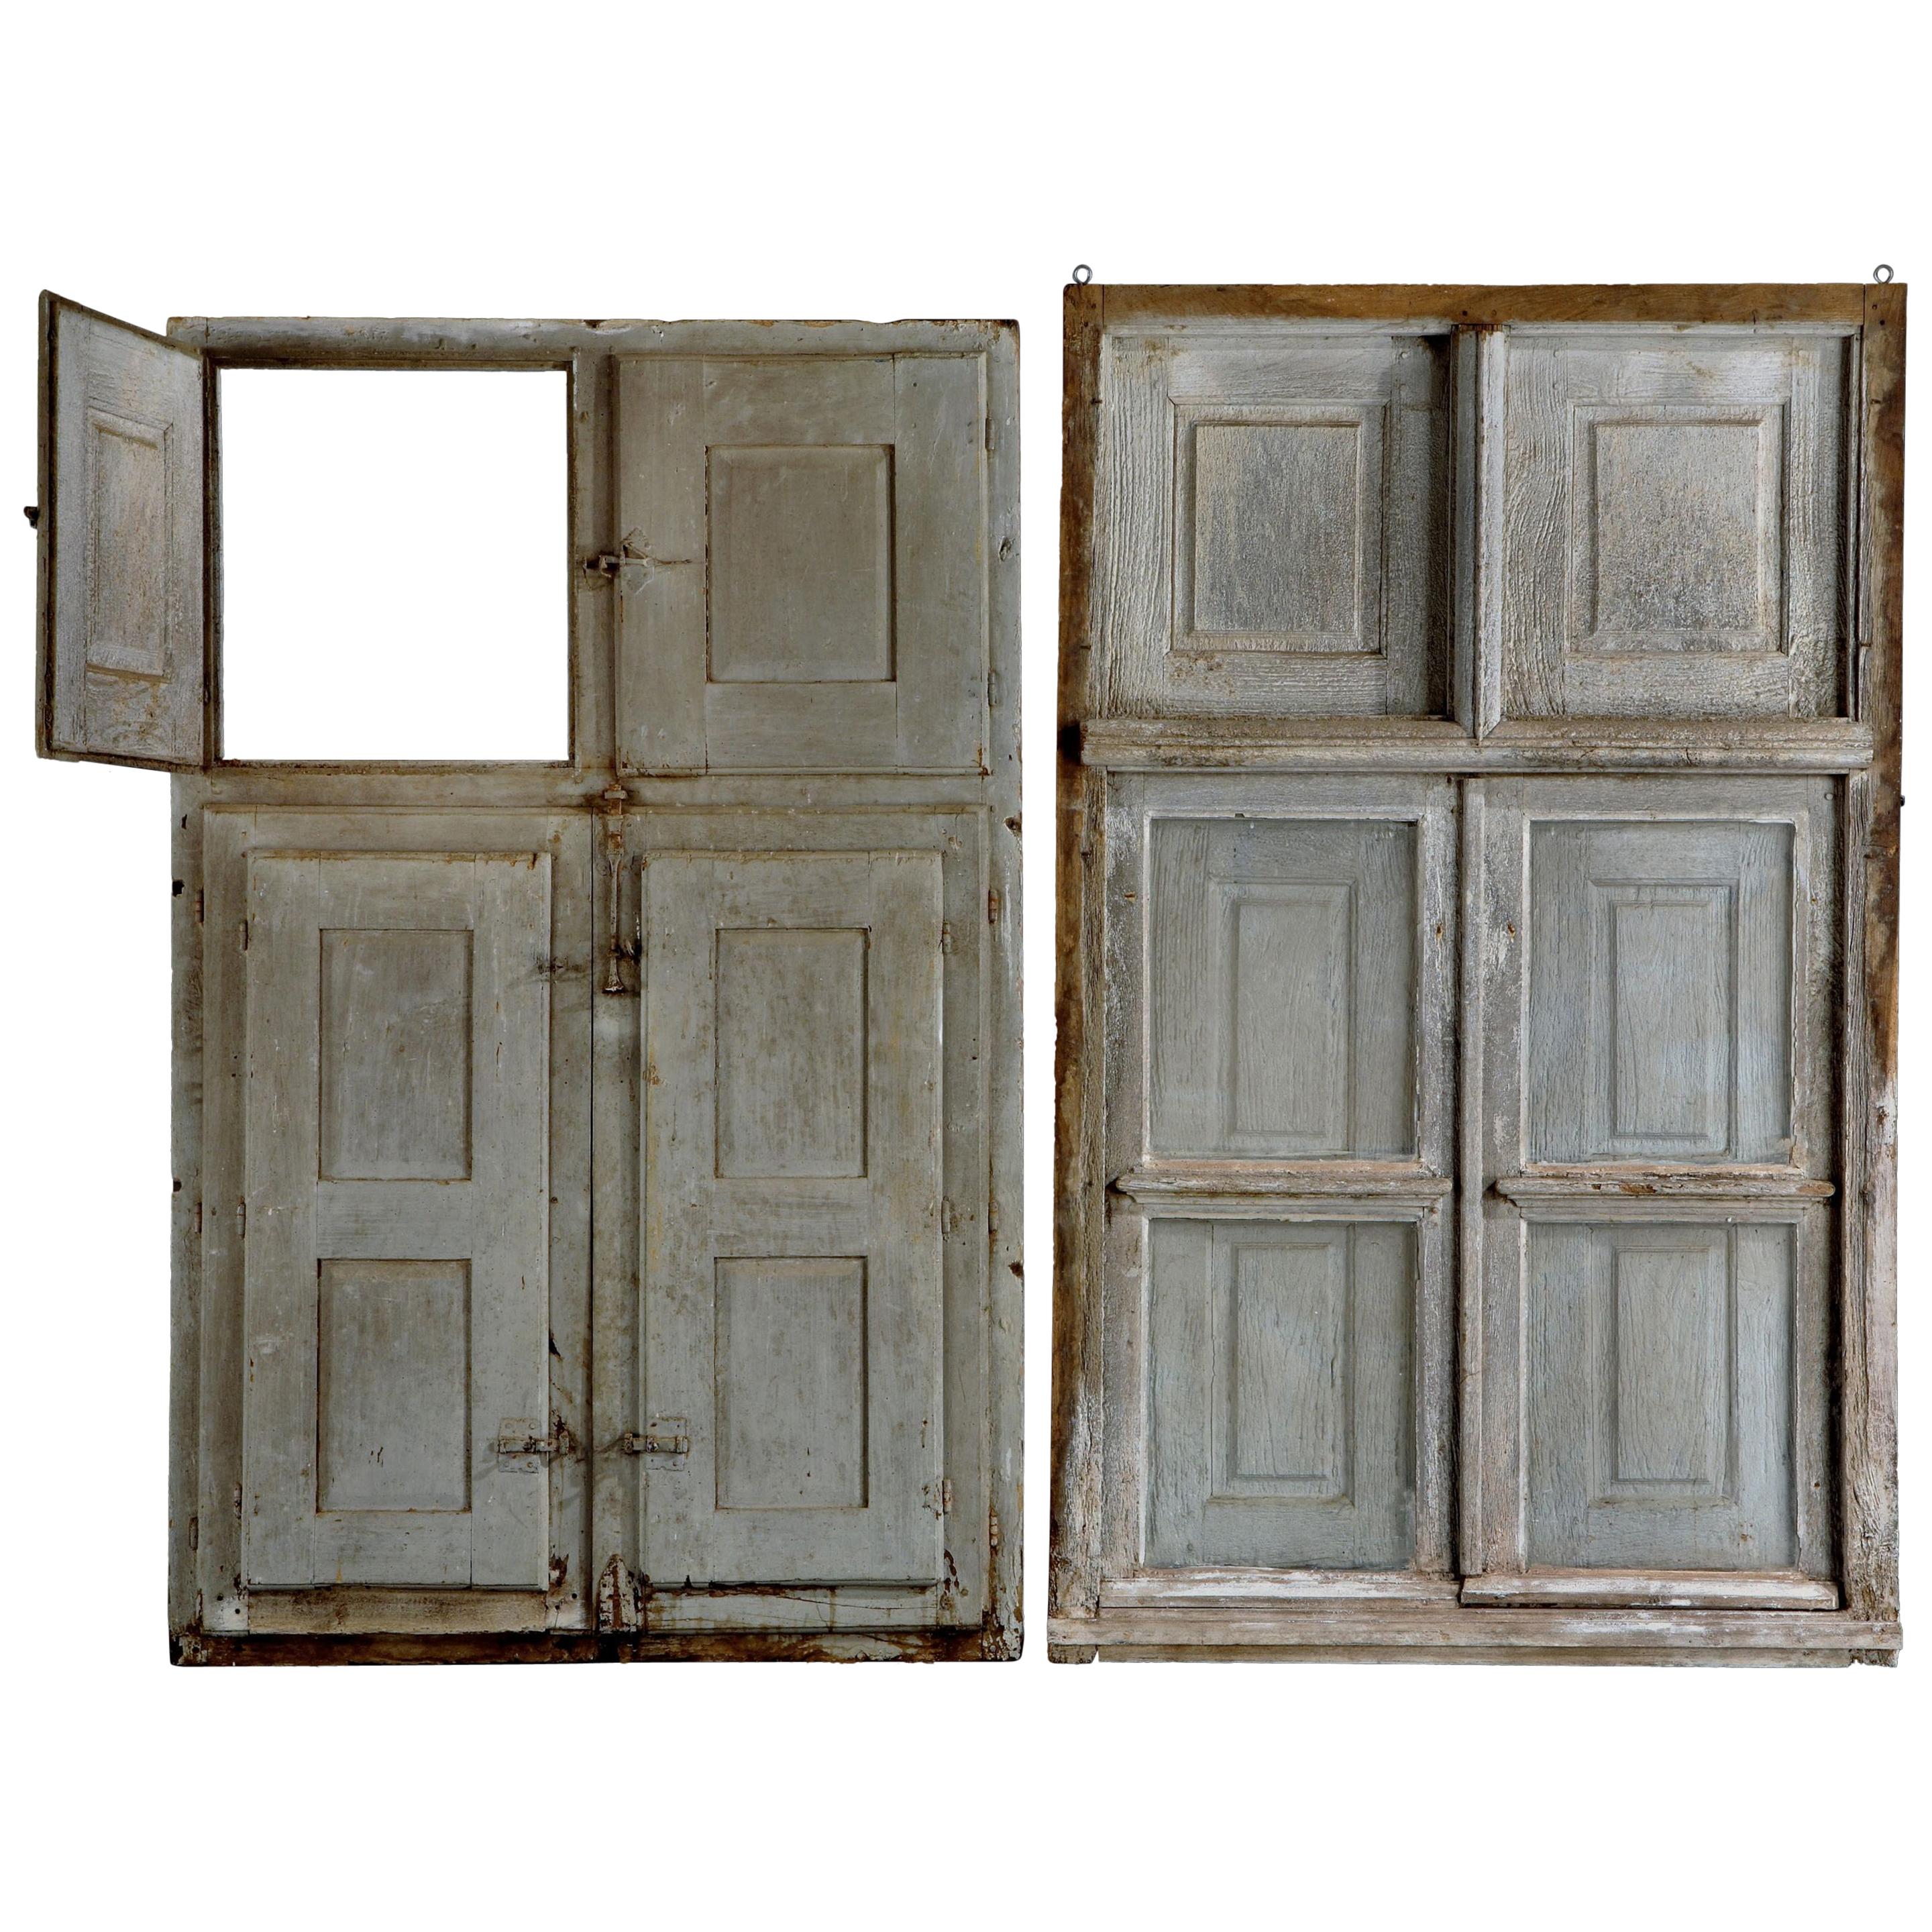 Ein Paar Fenster, flämischer Barock des 17. Jahrhunderts, Originalverkleidungen und Eisenarbeiten